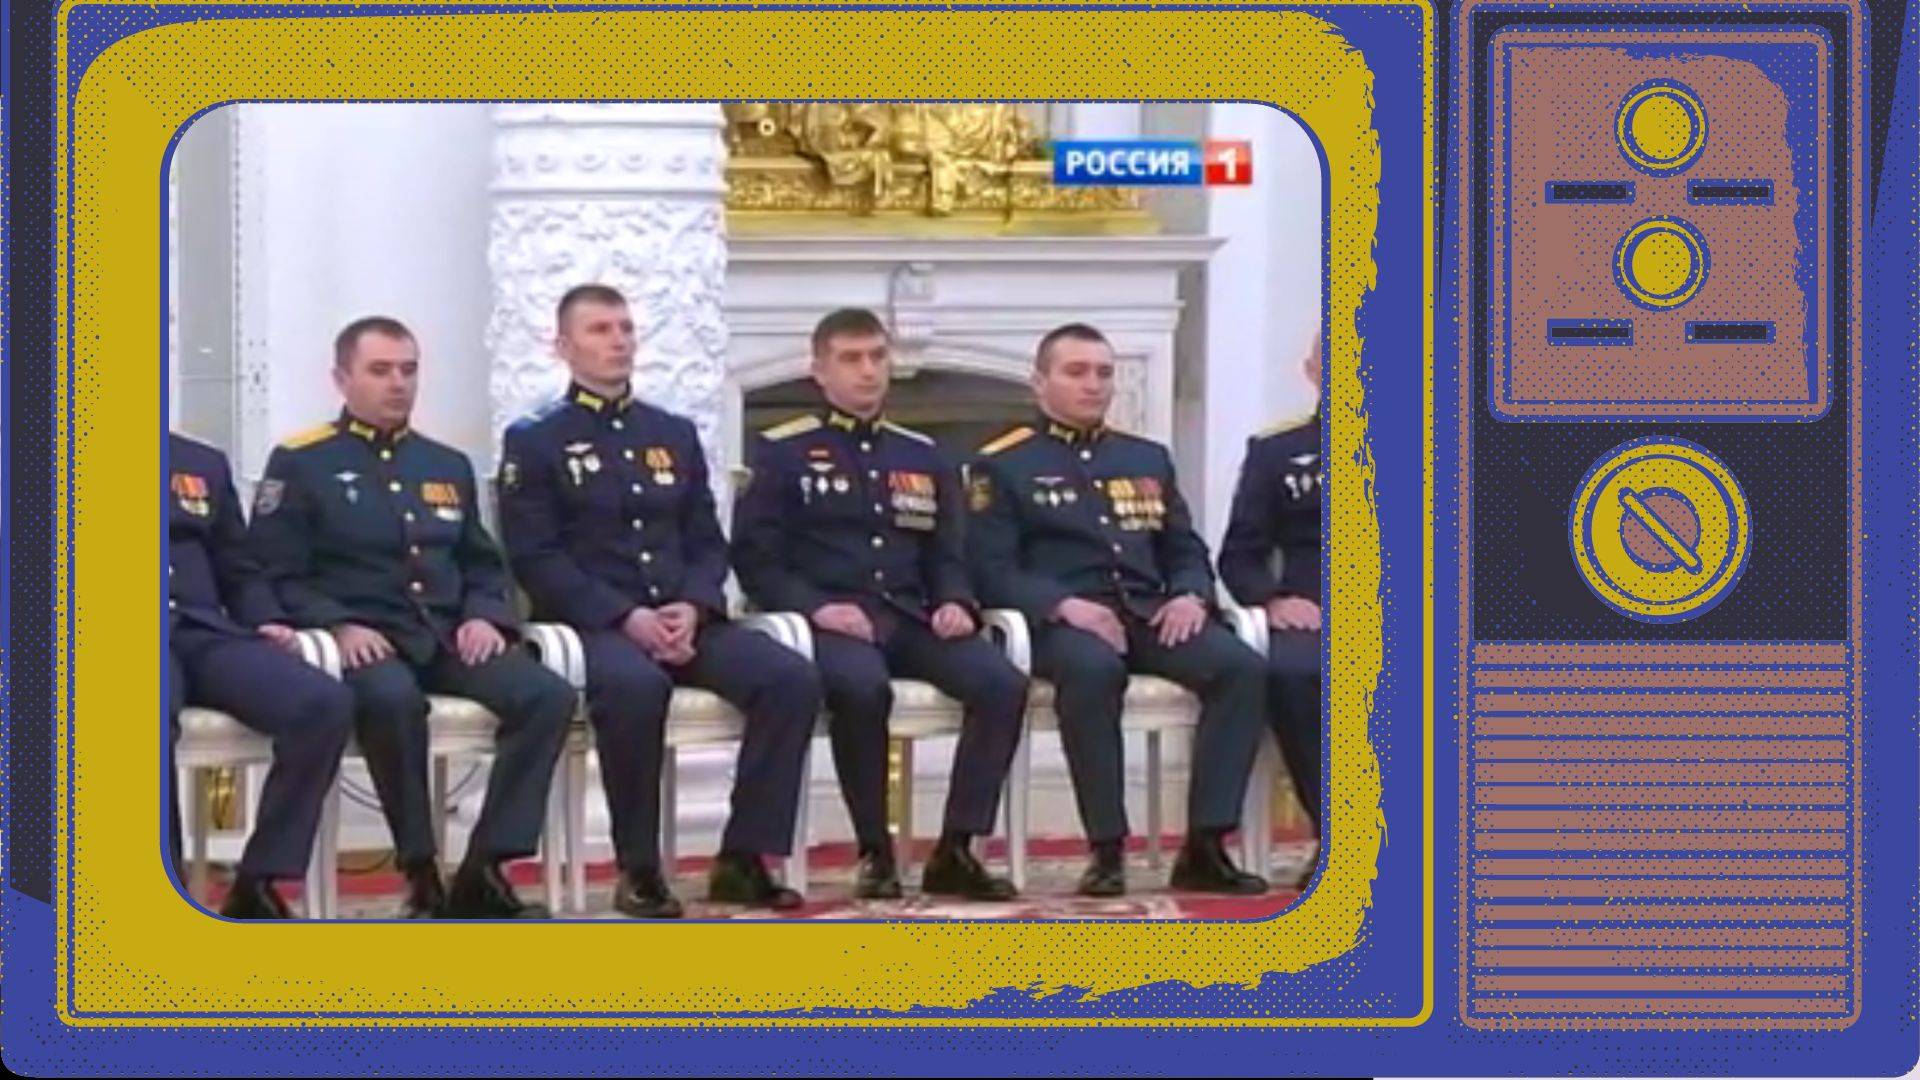 Putin odznacza żołnierzy